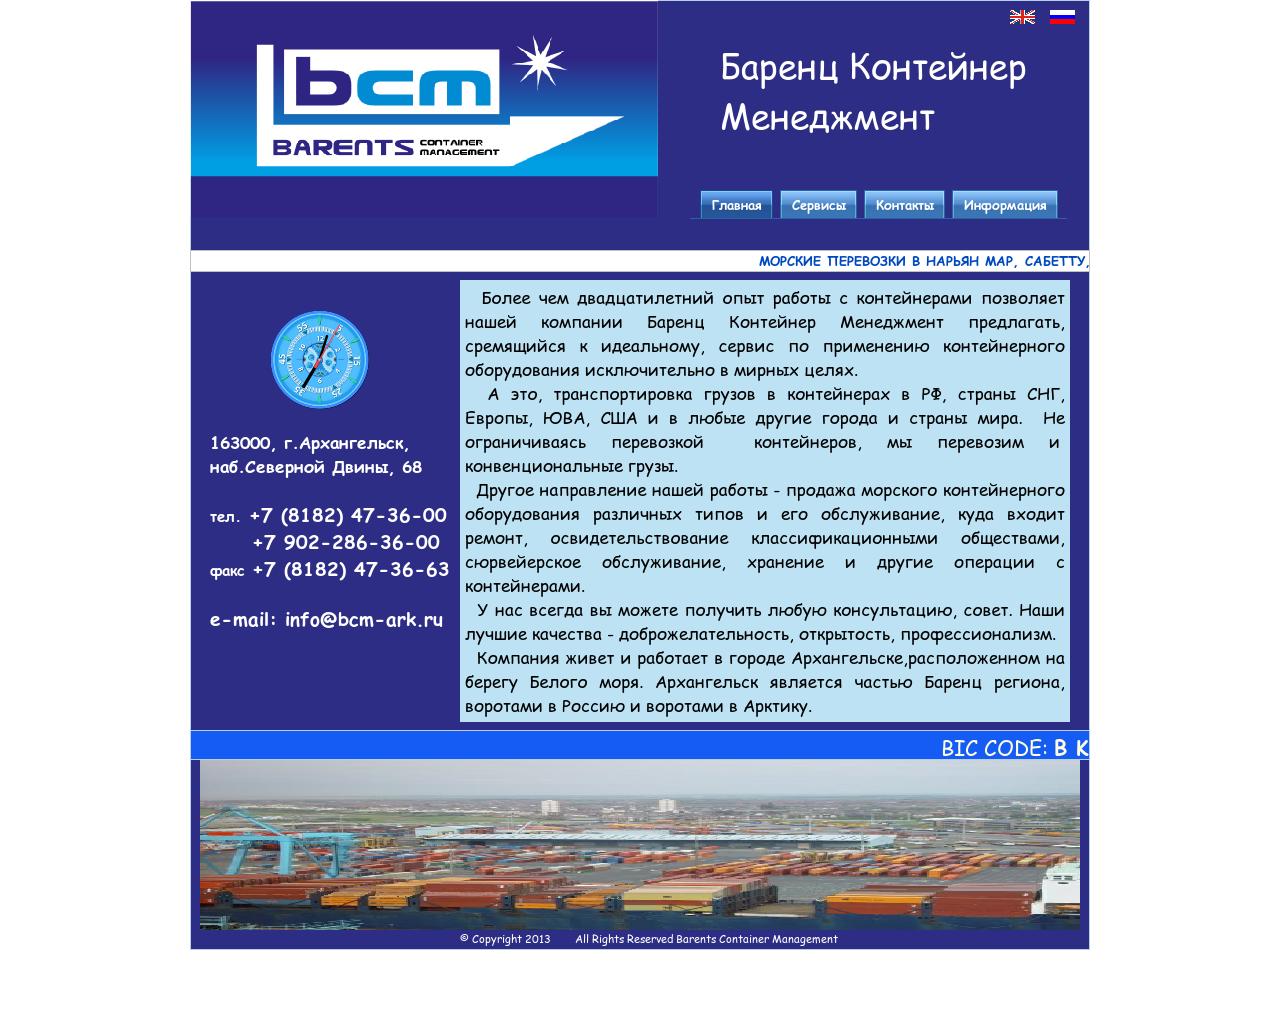 Изображение сайта bcm-ark.ru в разрешении 1280x1024